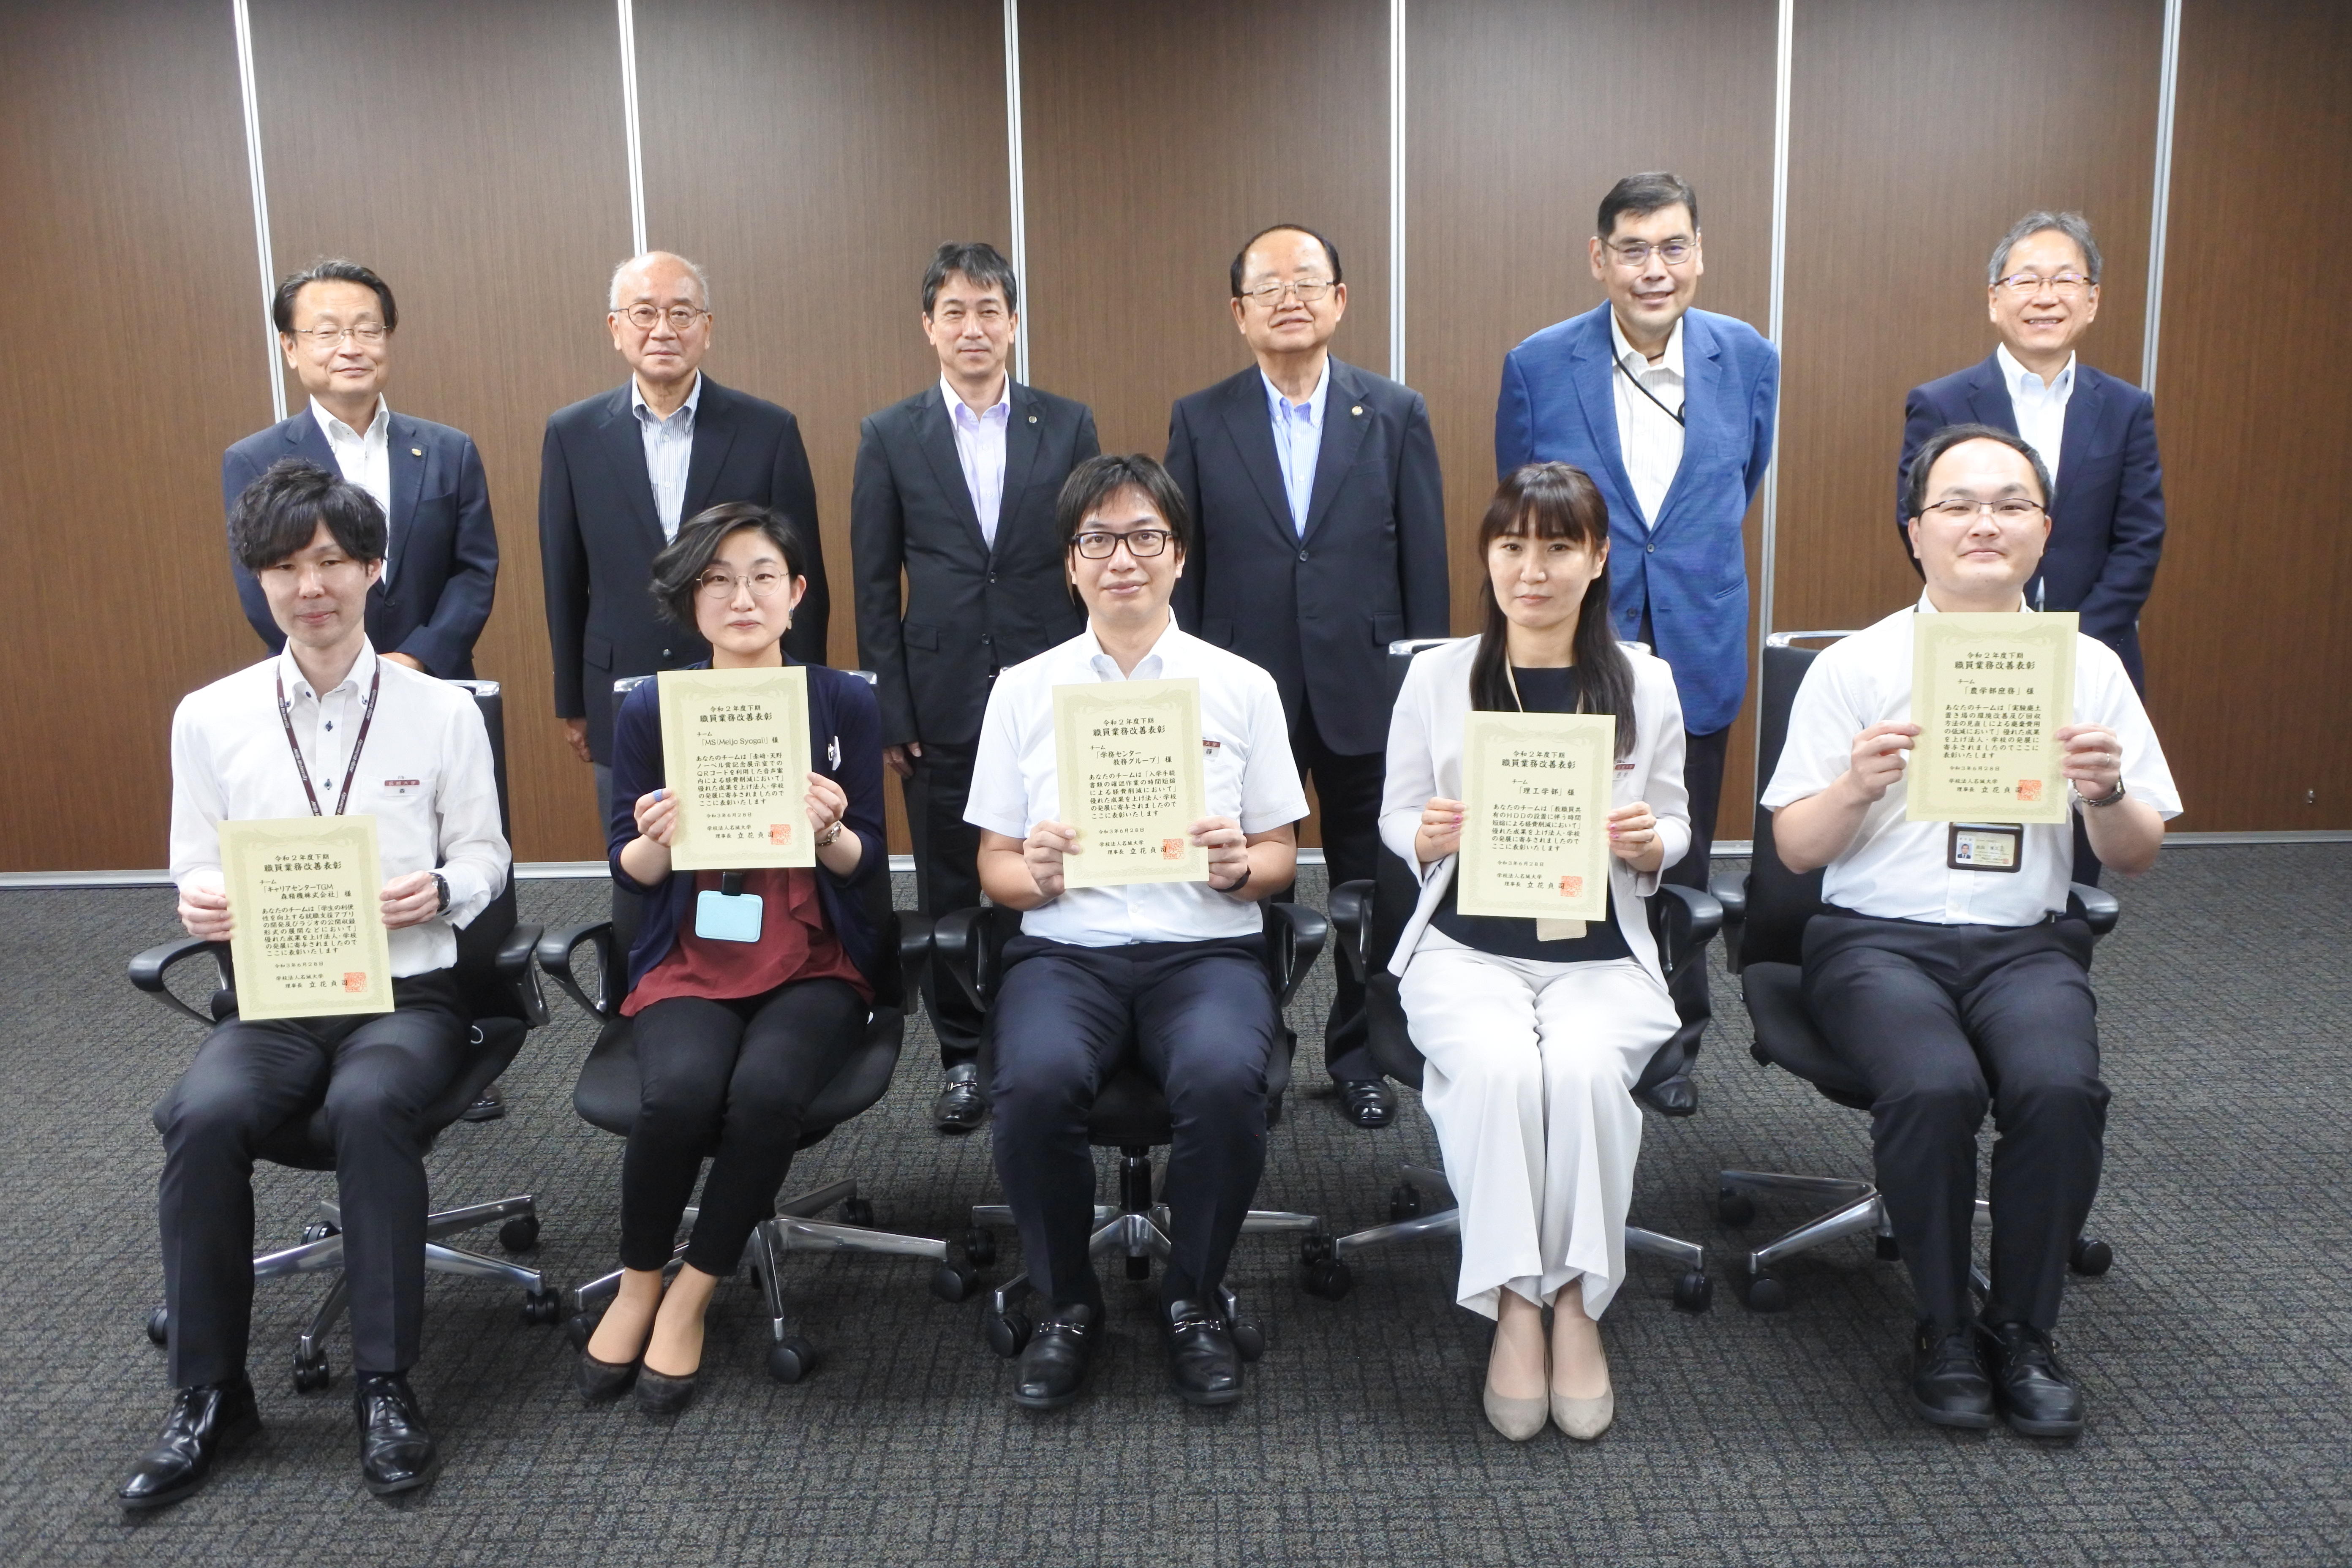 表彰を受けた代表者（前列左から、森さん、田上さん、加藤さん、西村さん、奥田さん）